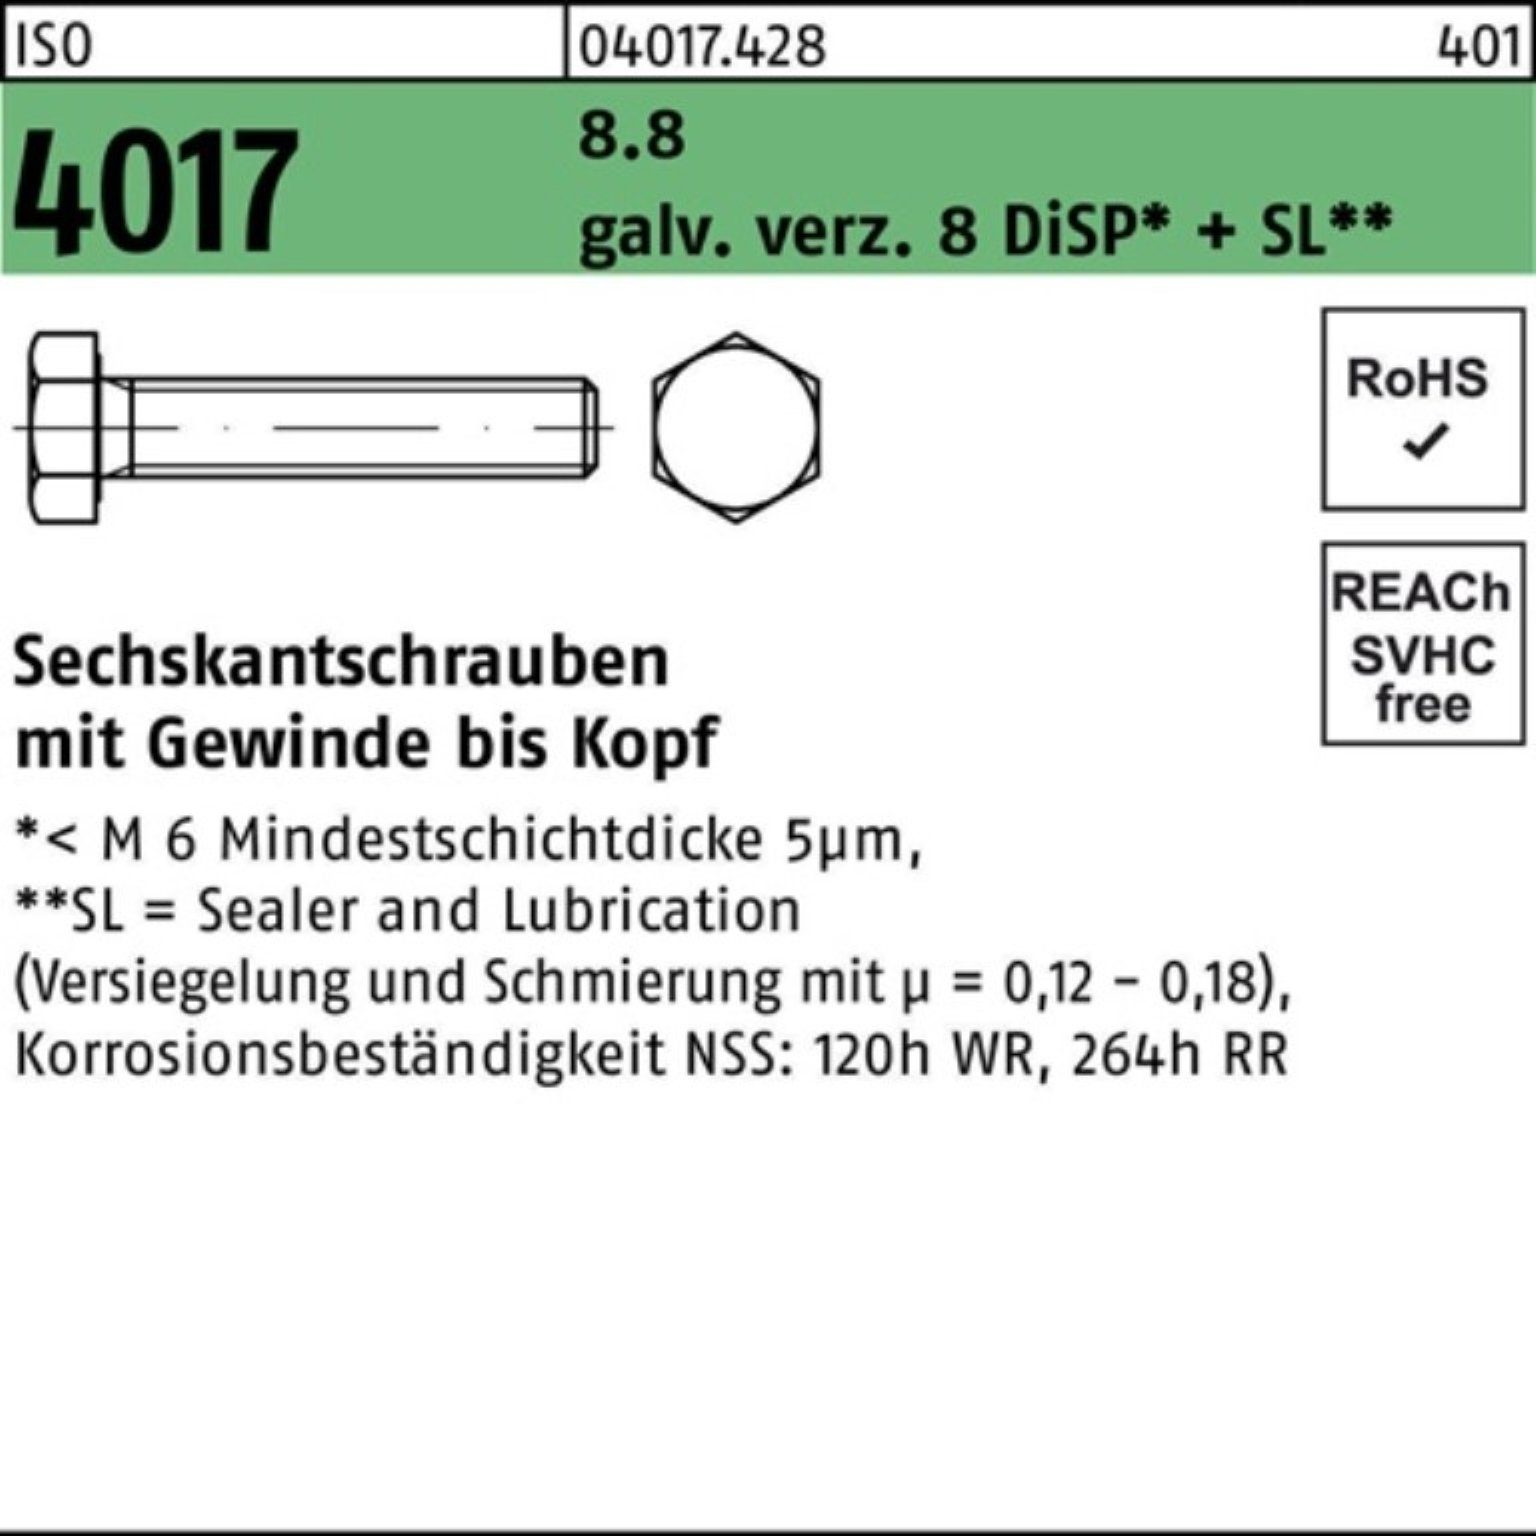 galv.verz. 8 M14x ISO Sechskantschraube 100er Bufab VG 4017 8.8 50 Sechskantschraube Pack DiSP